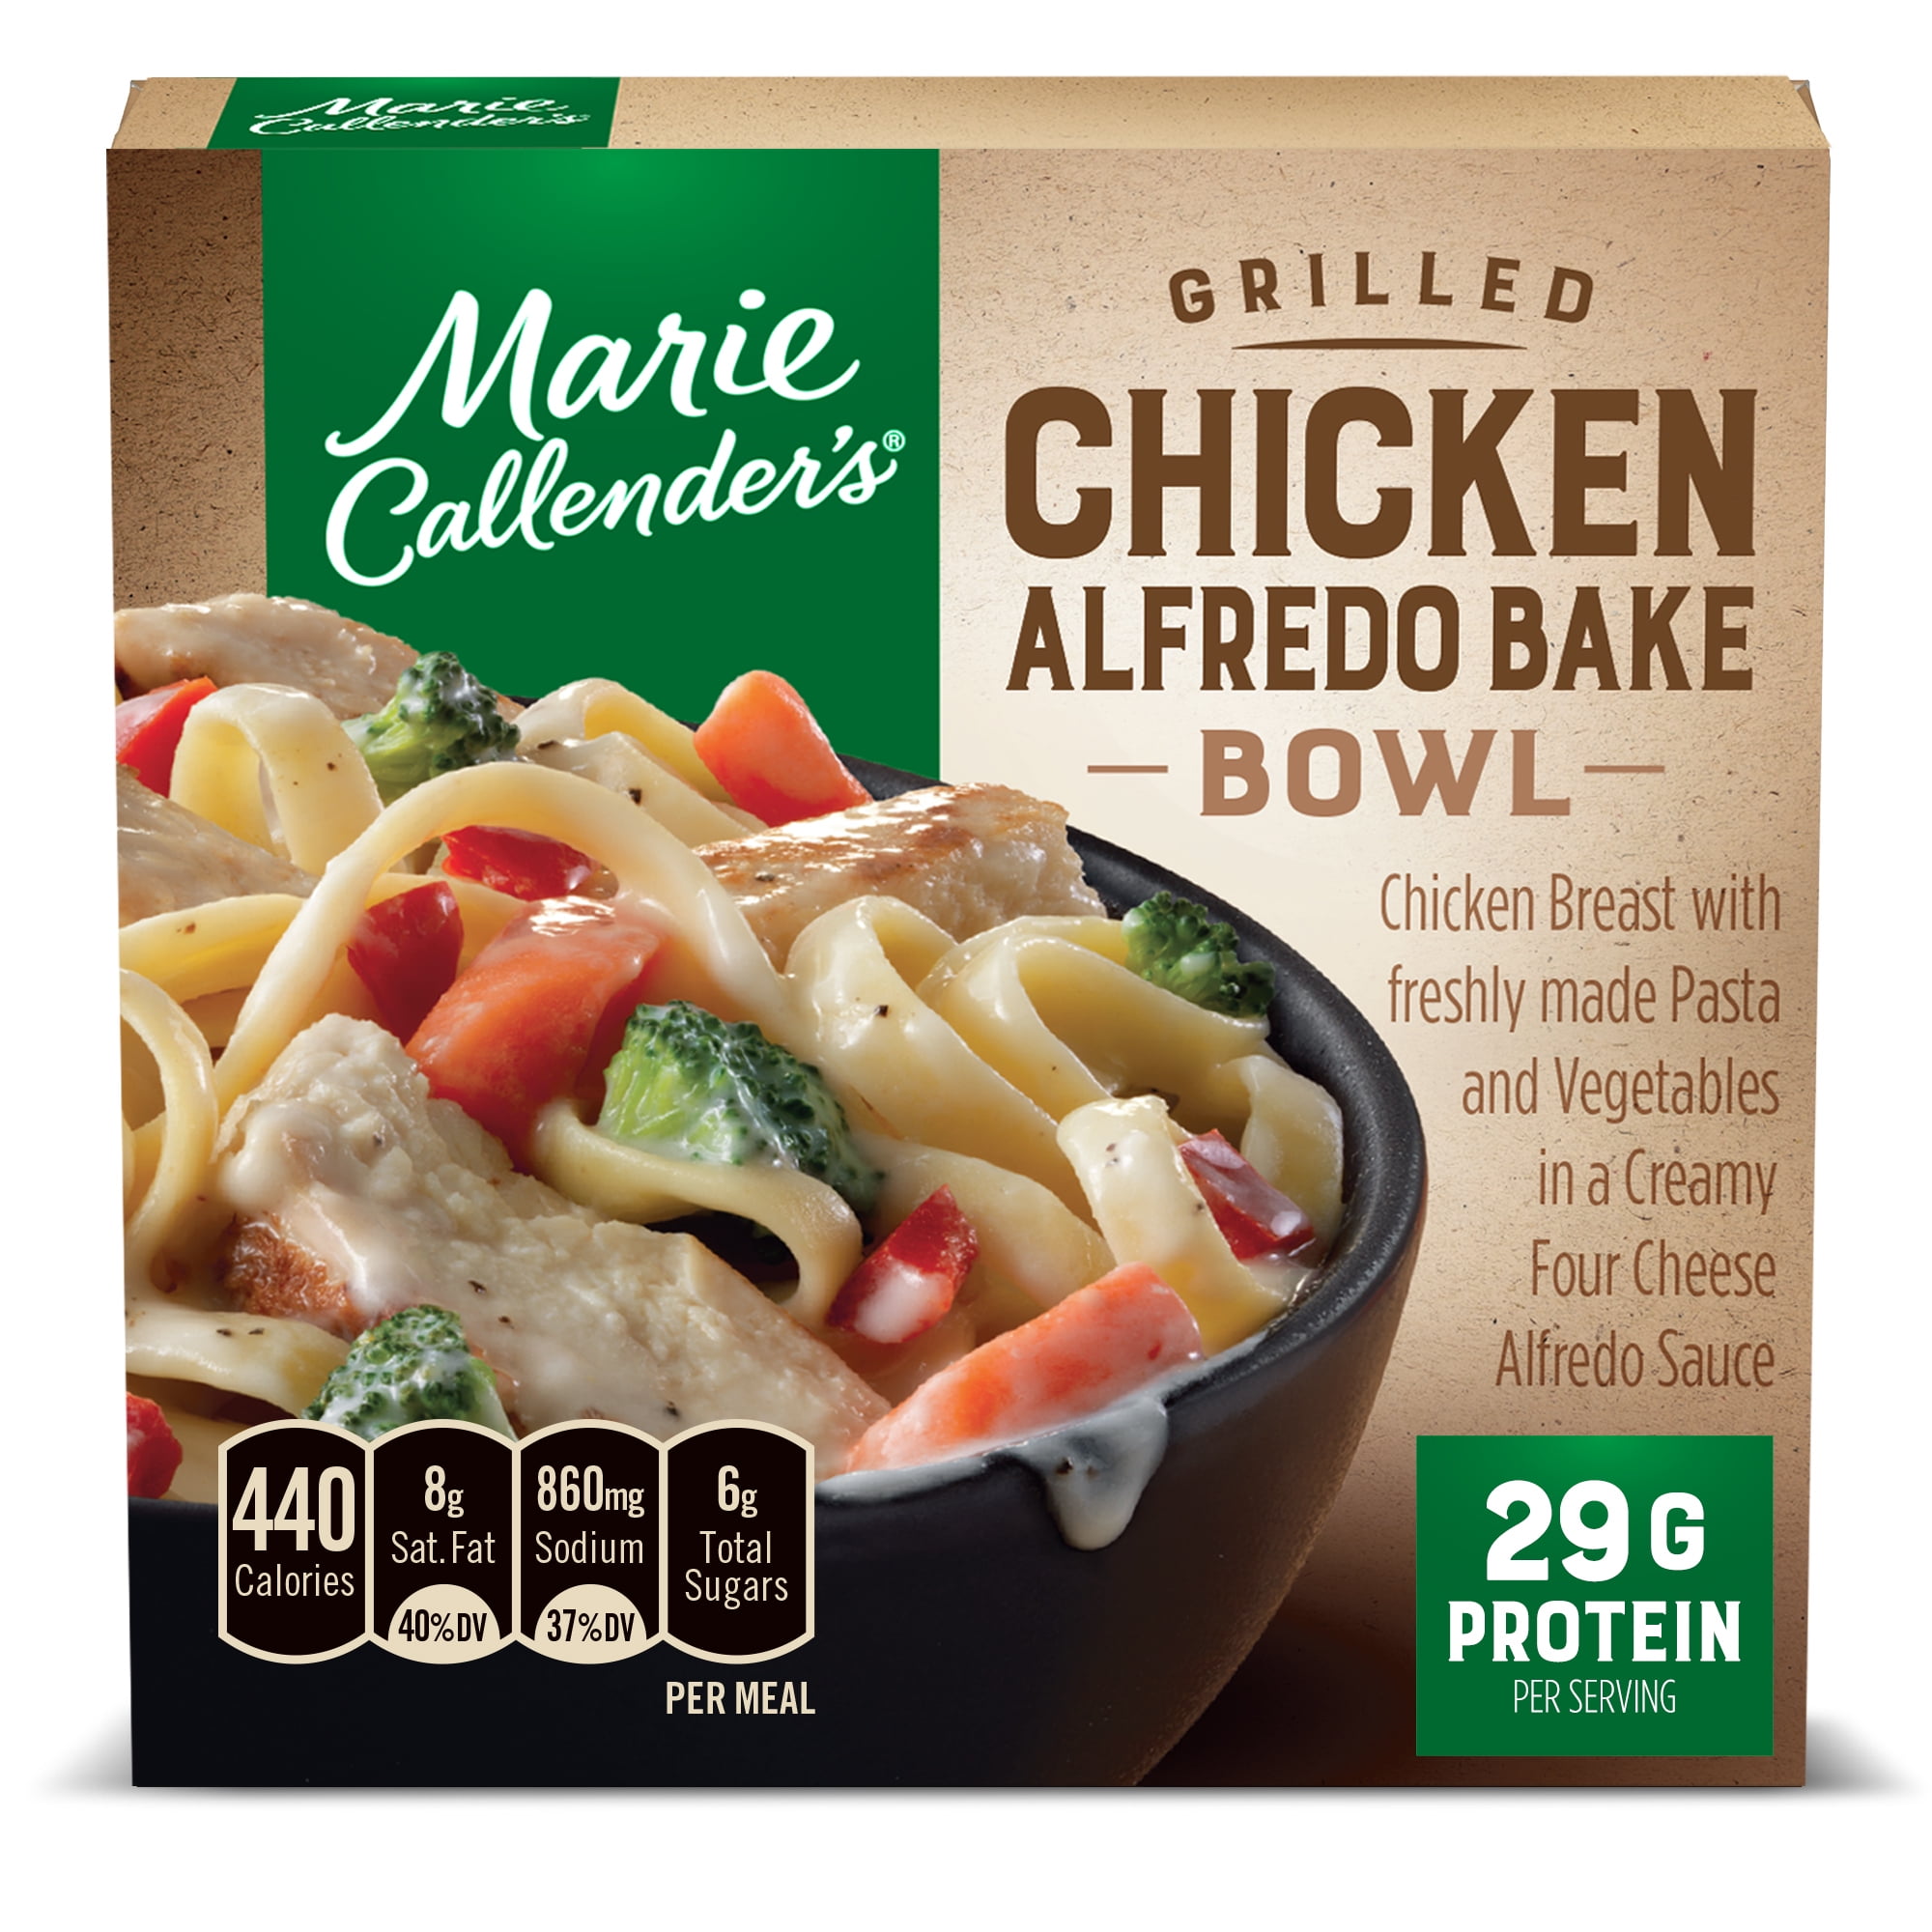 Marie Callender's Grilled Chicken Alfredo Bake Bowl, Frozen Meals, 11.6 oz (Frozen)